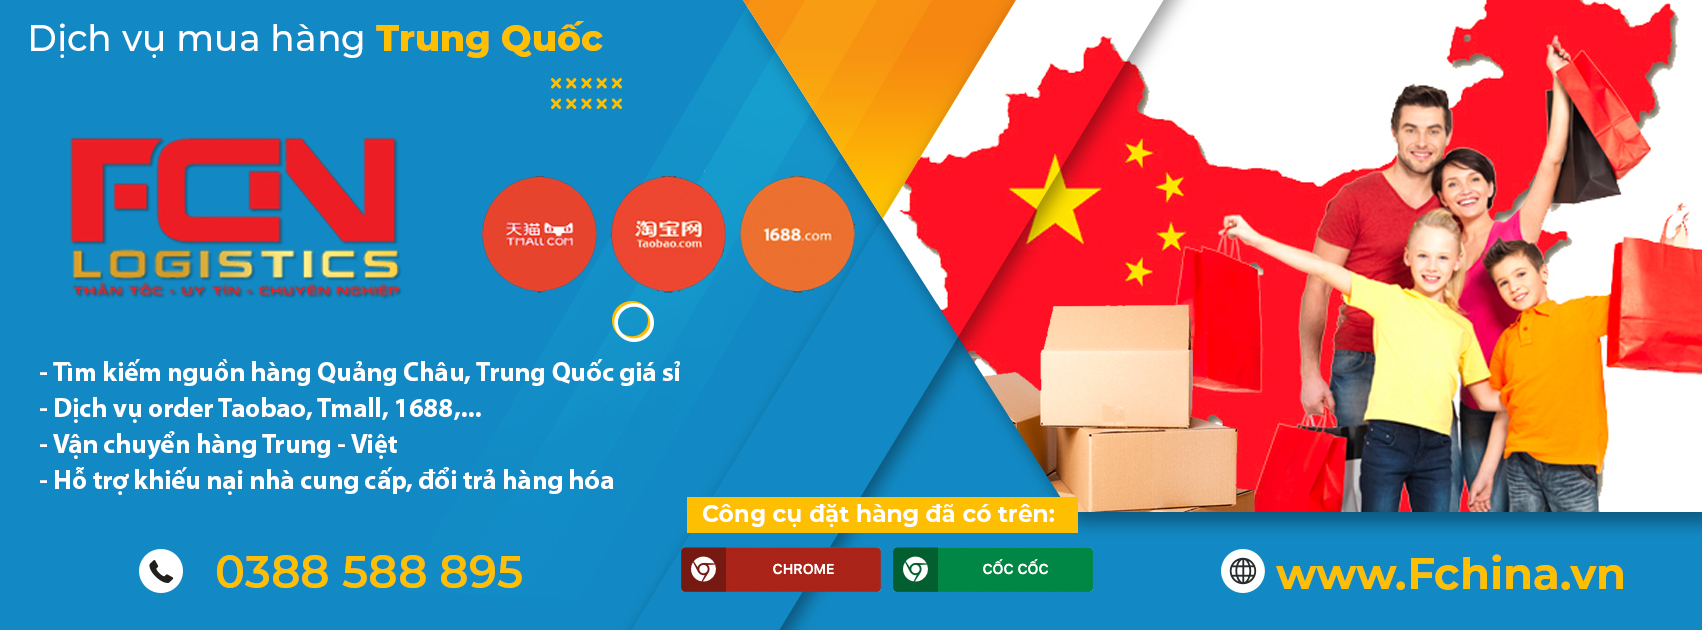 App mua hàng Quảng Châu hỗ trợ tiếng Việt - Fchina